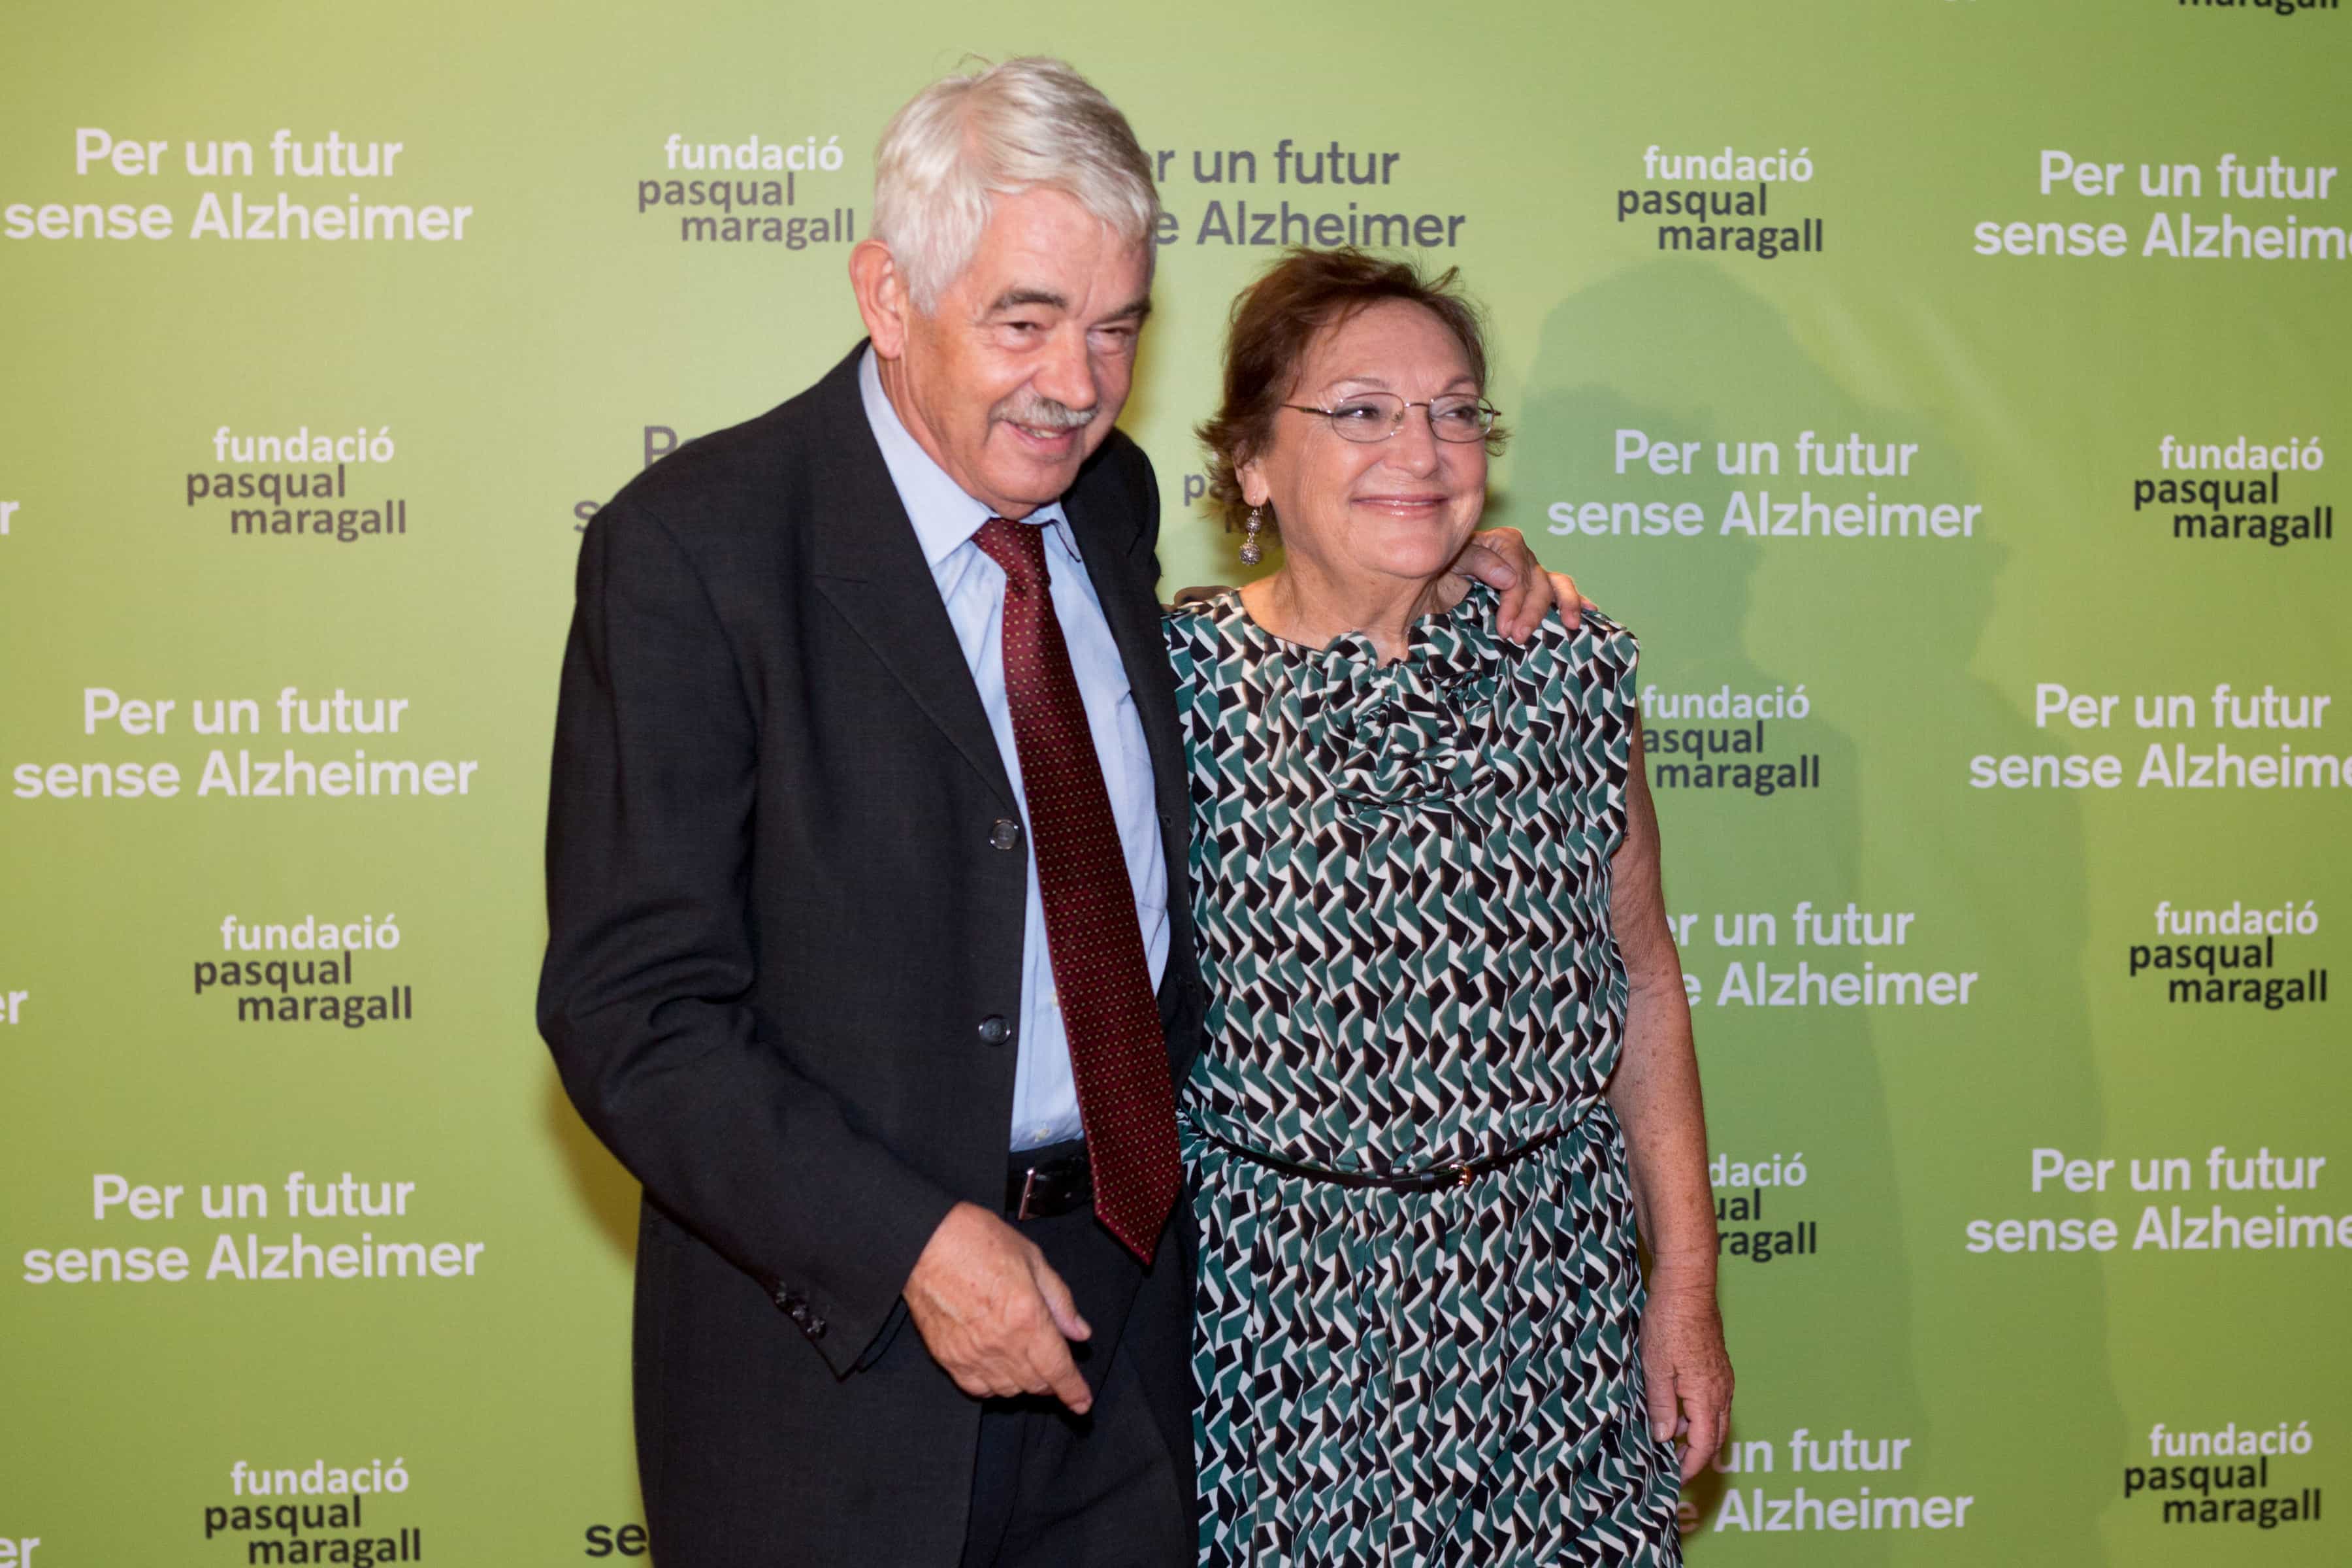 Pasqual Maragall y su esposa Diana Garrigosa, presidente de honor y presidenta de la Fundación Pasqual Paragall